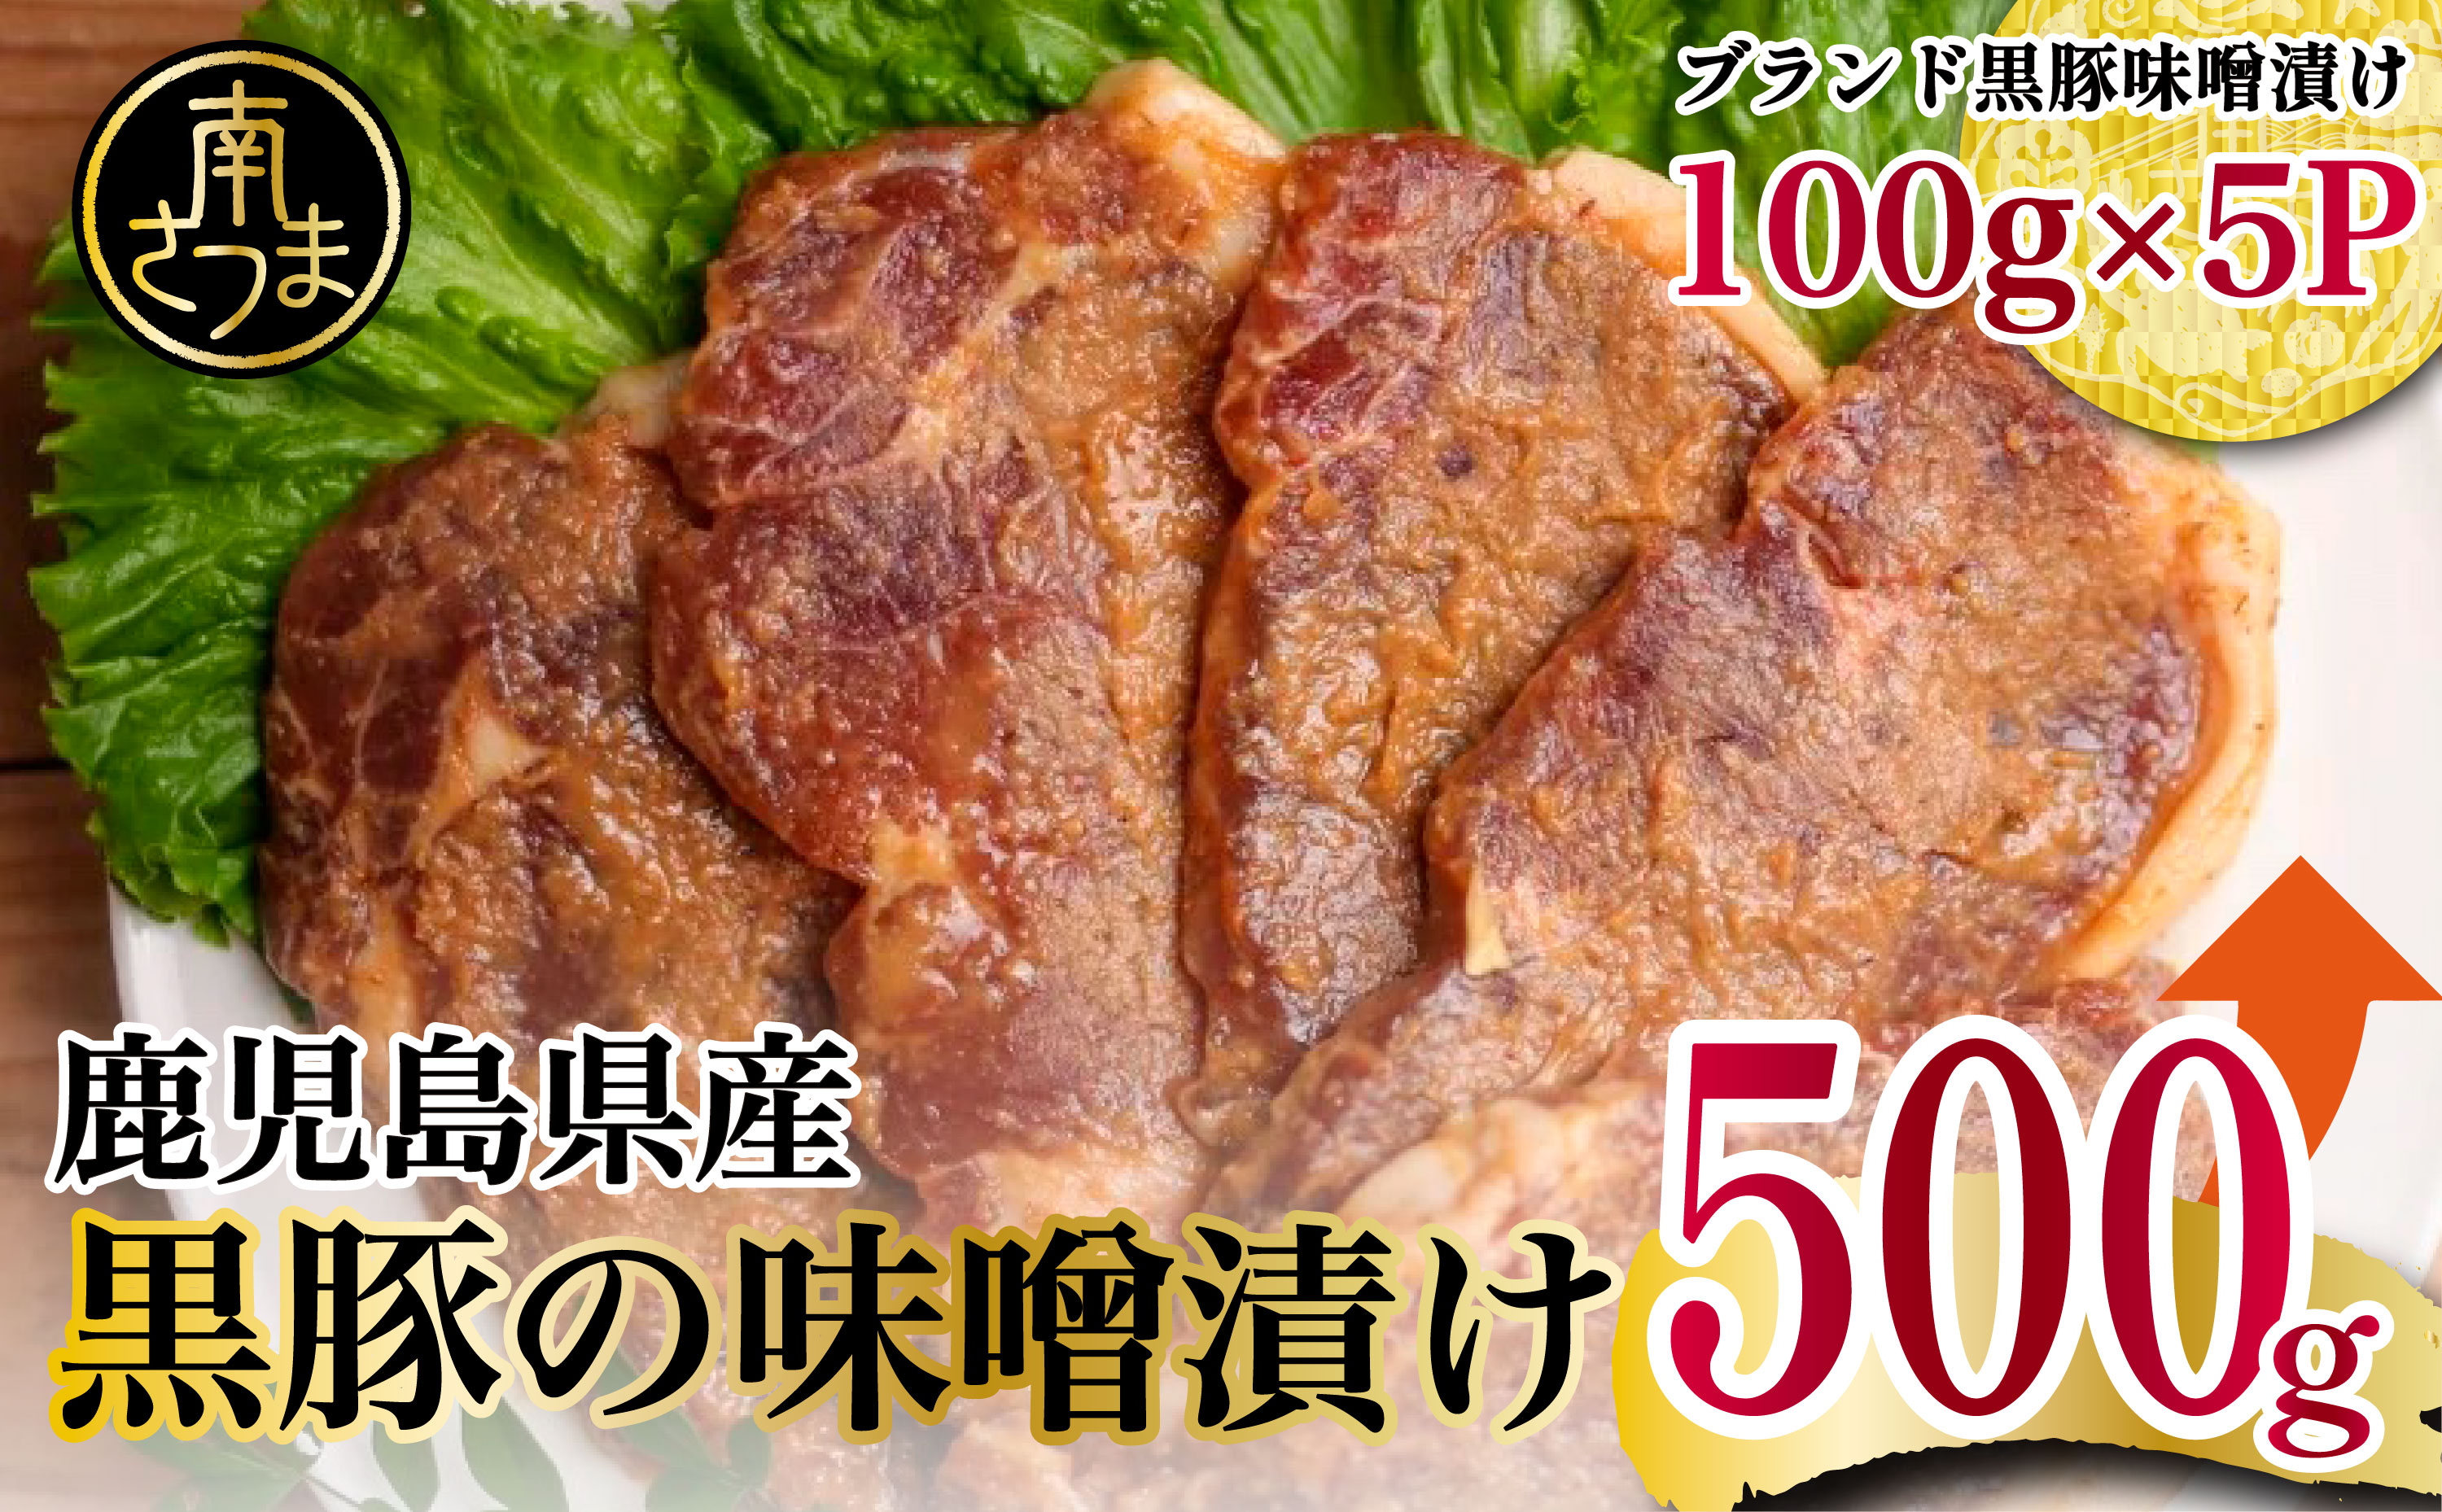 □【鹿児島県産】こだわりの黒豚ロース味噌漬け500g（100g×5P）